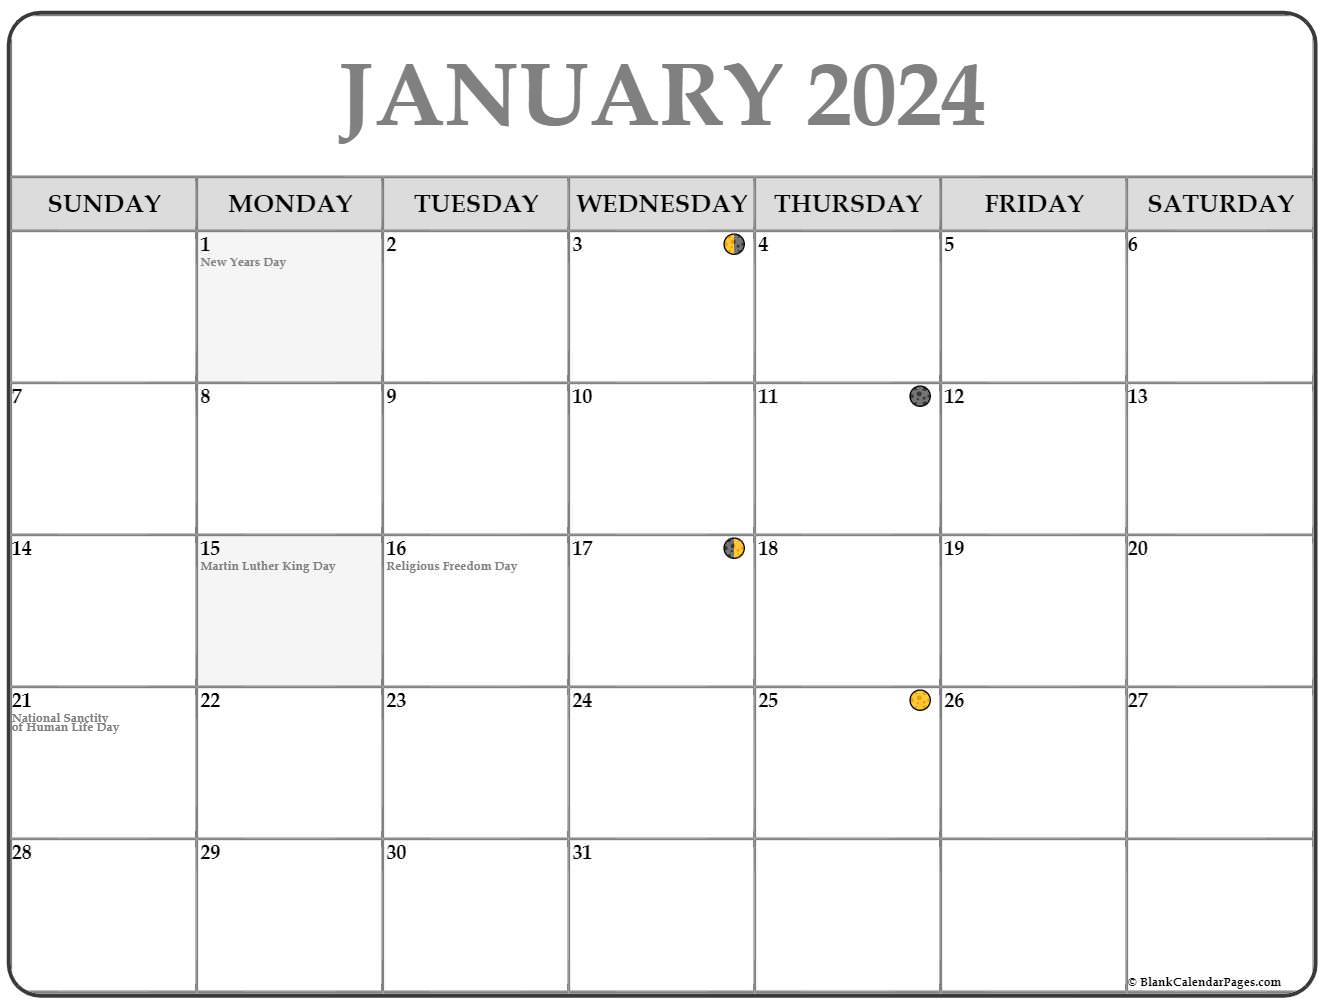 january 2021 moon calendar January 2021 Lunar Calendar Moon Phase Calendar january 2021 moon calendar